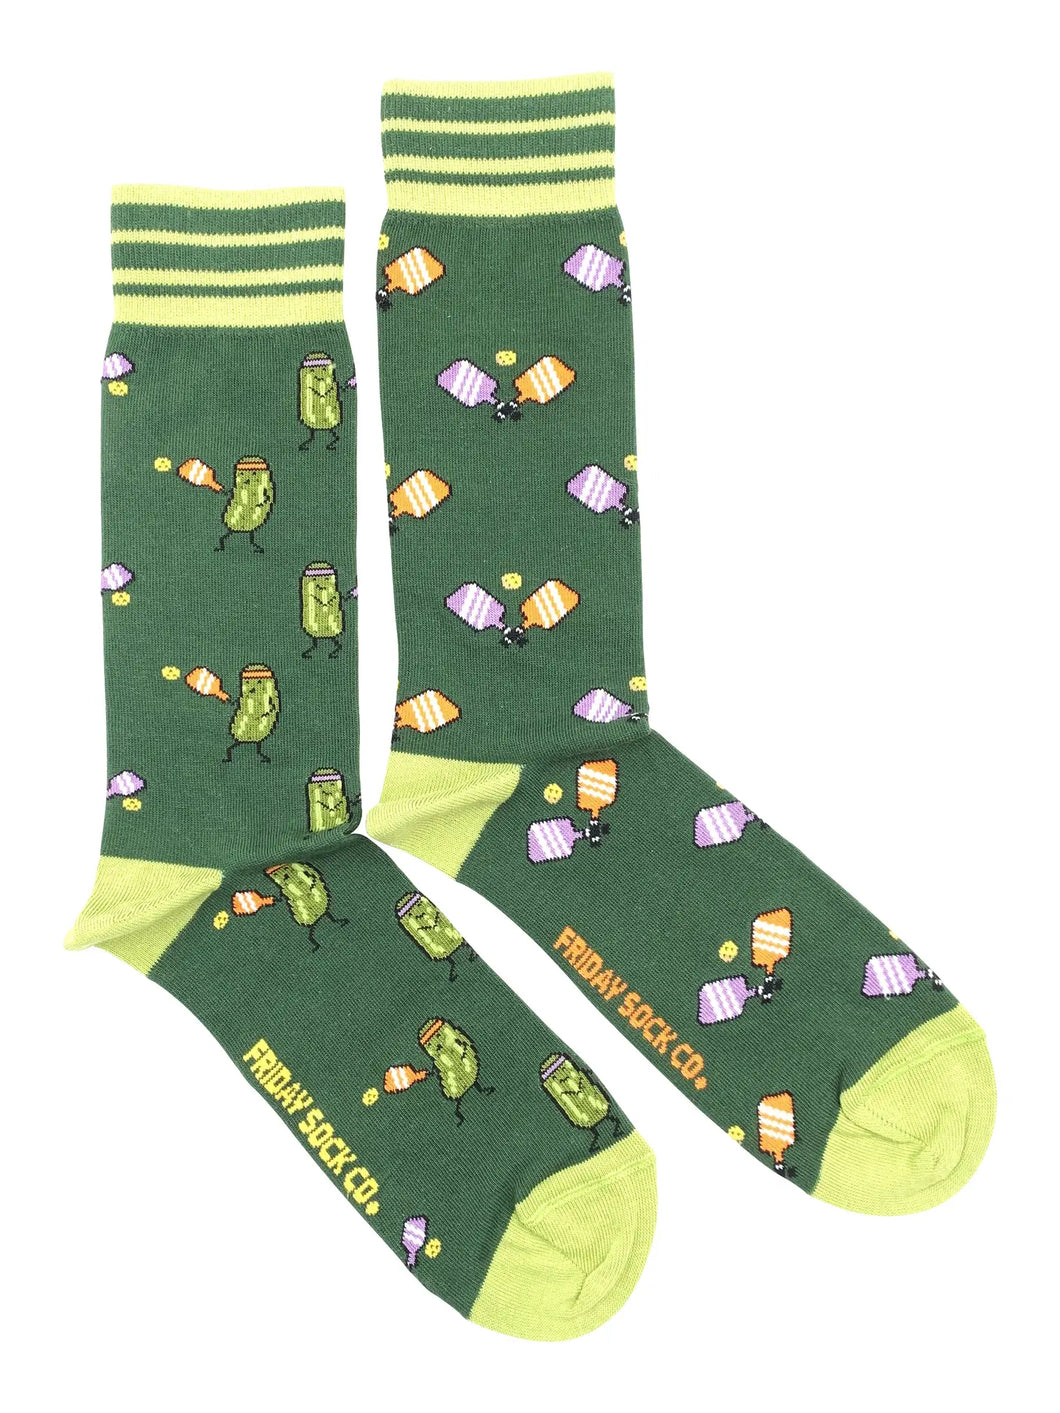 men's socks - pickle ball